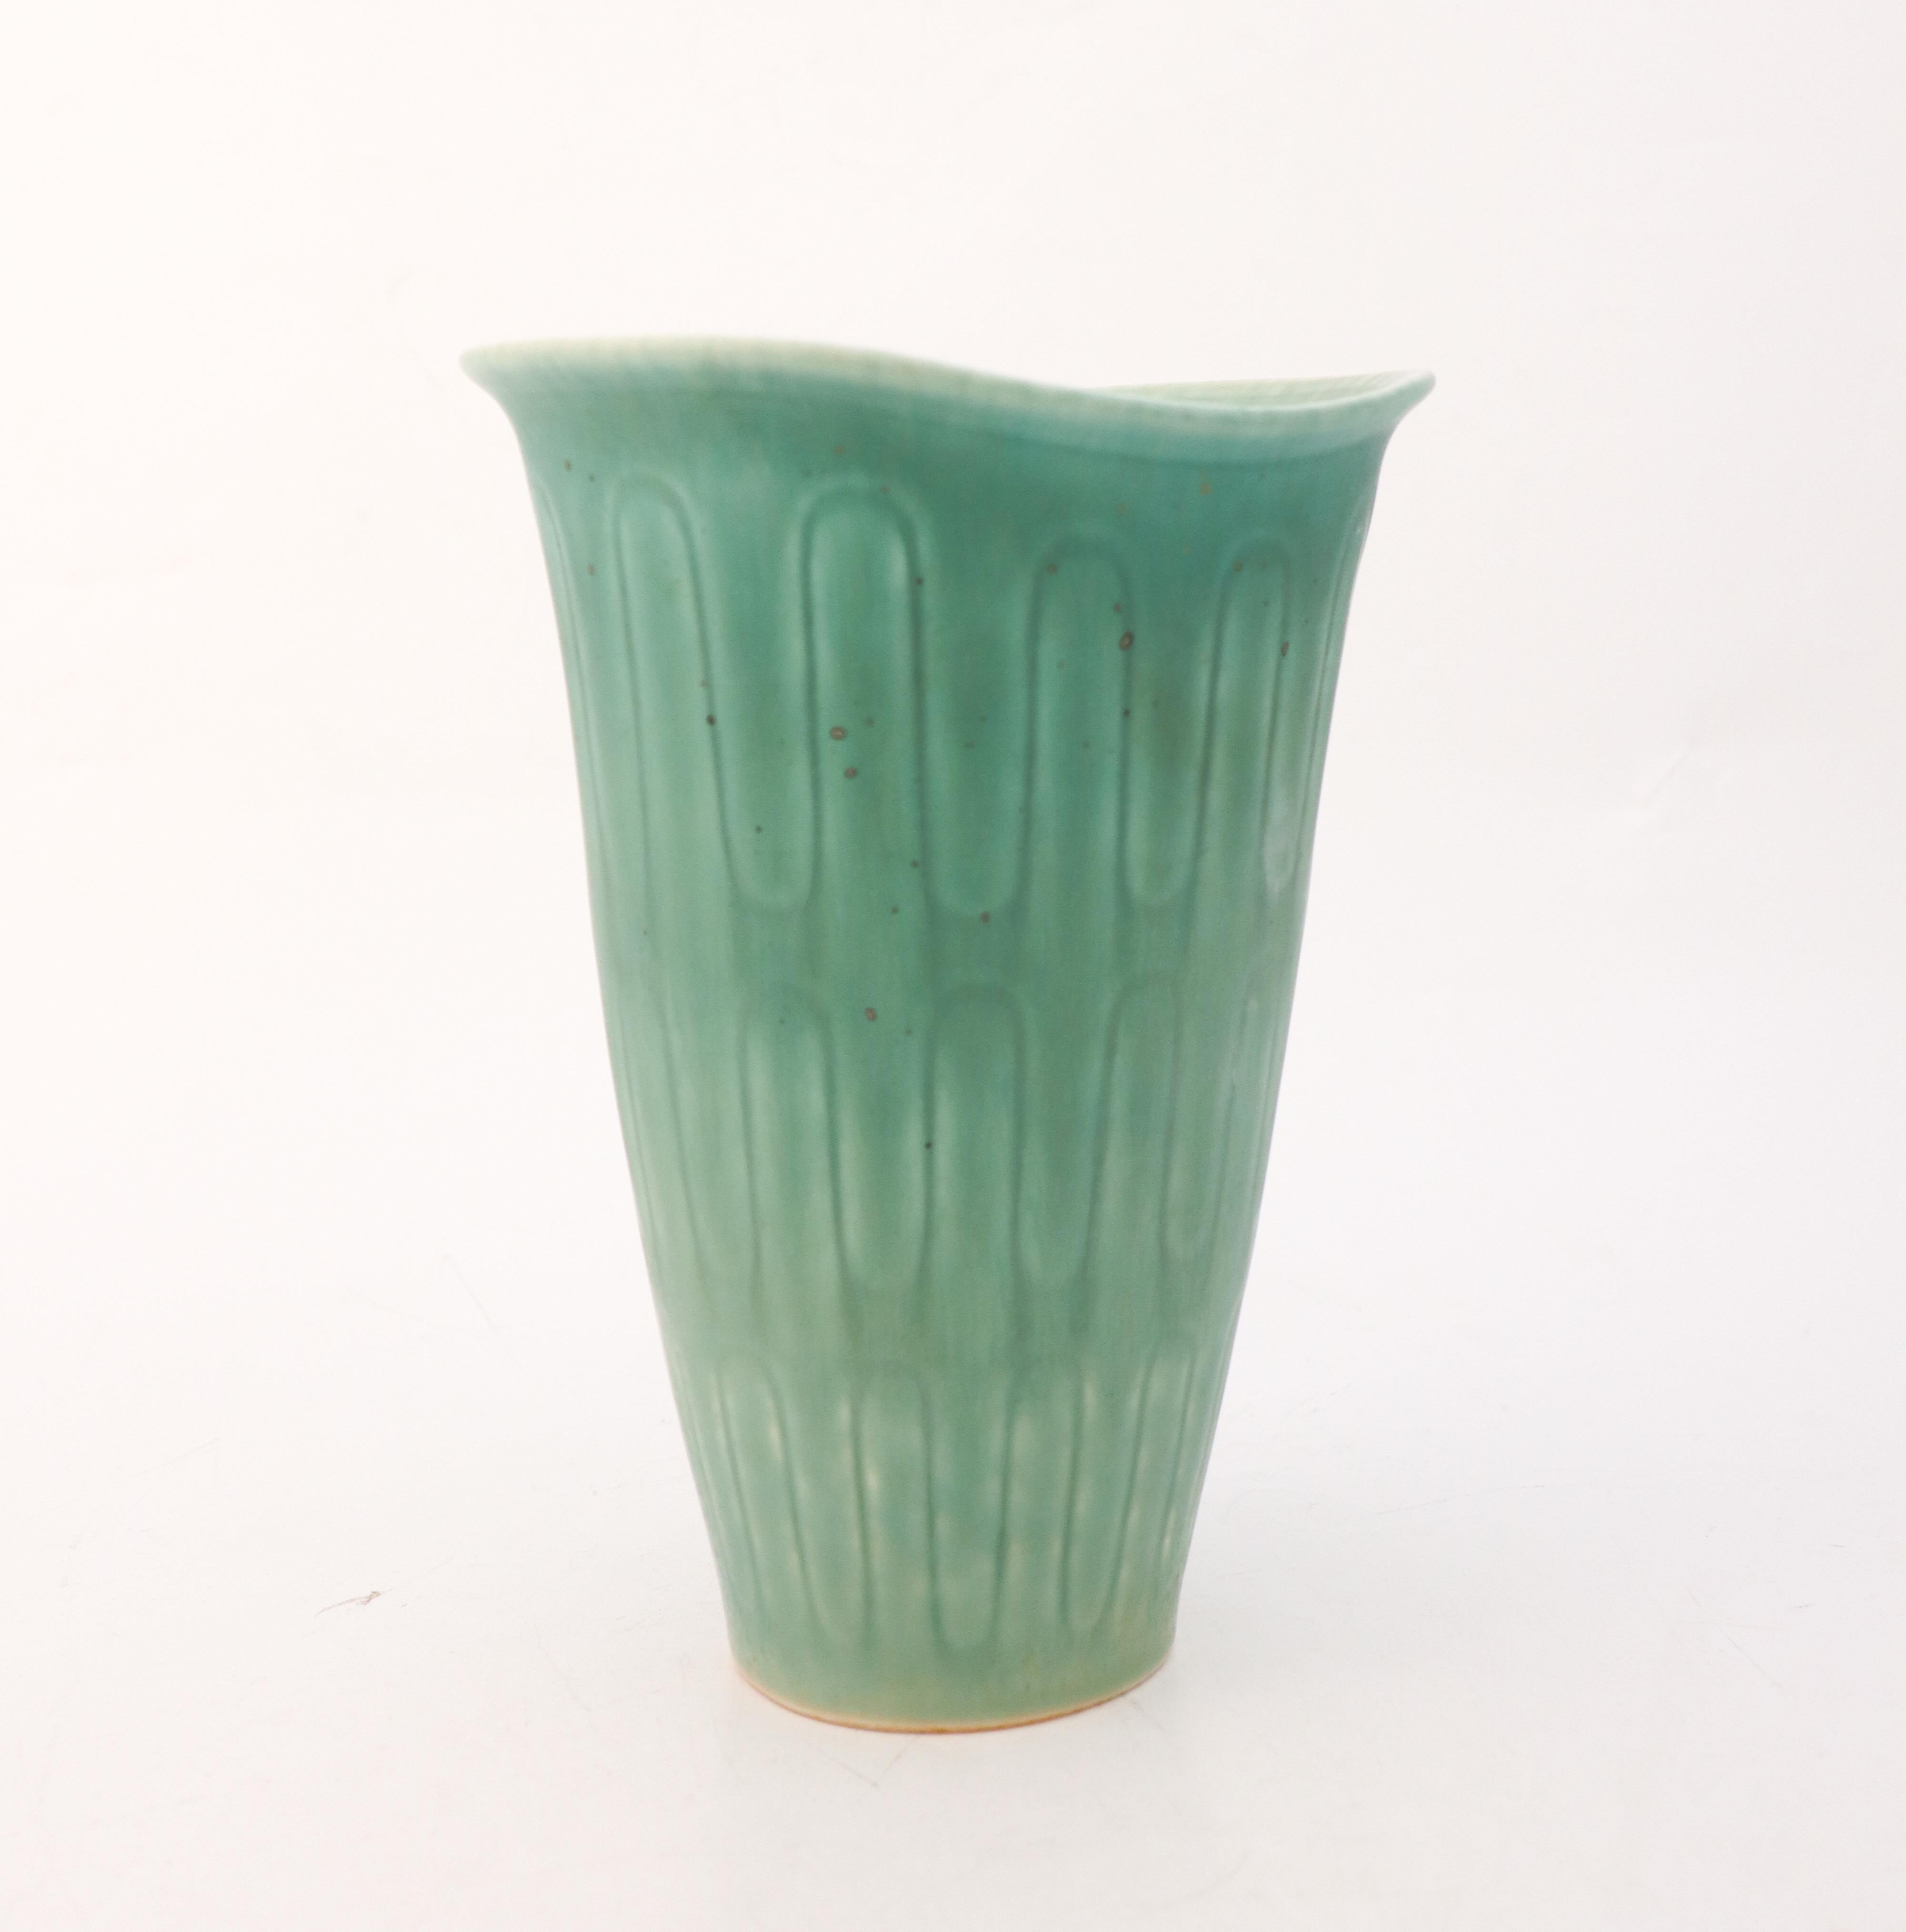 Eine türkisfarbene Vase mit schöner Glasur, entworfen von Gunnar Nylund in Rörstrand. Die Vase ist 23 cm hoch und hat einen Durchmesser von 17 x 14 cm (6.8